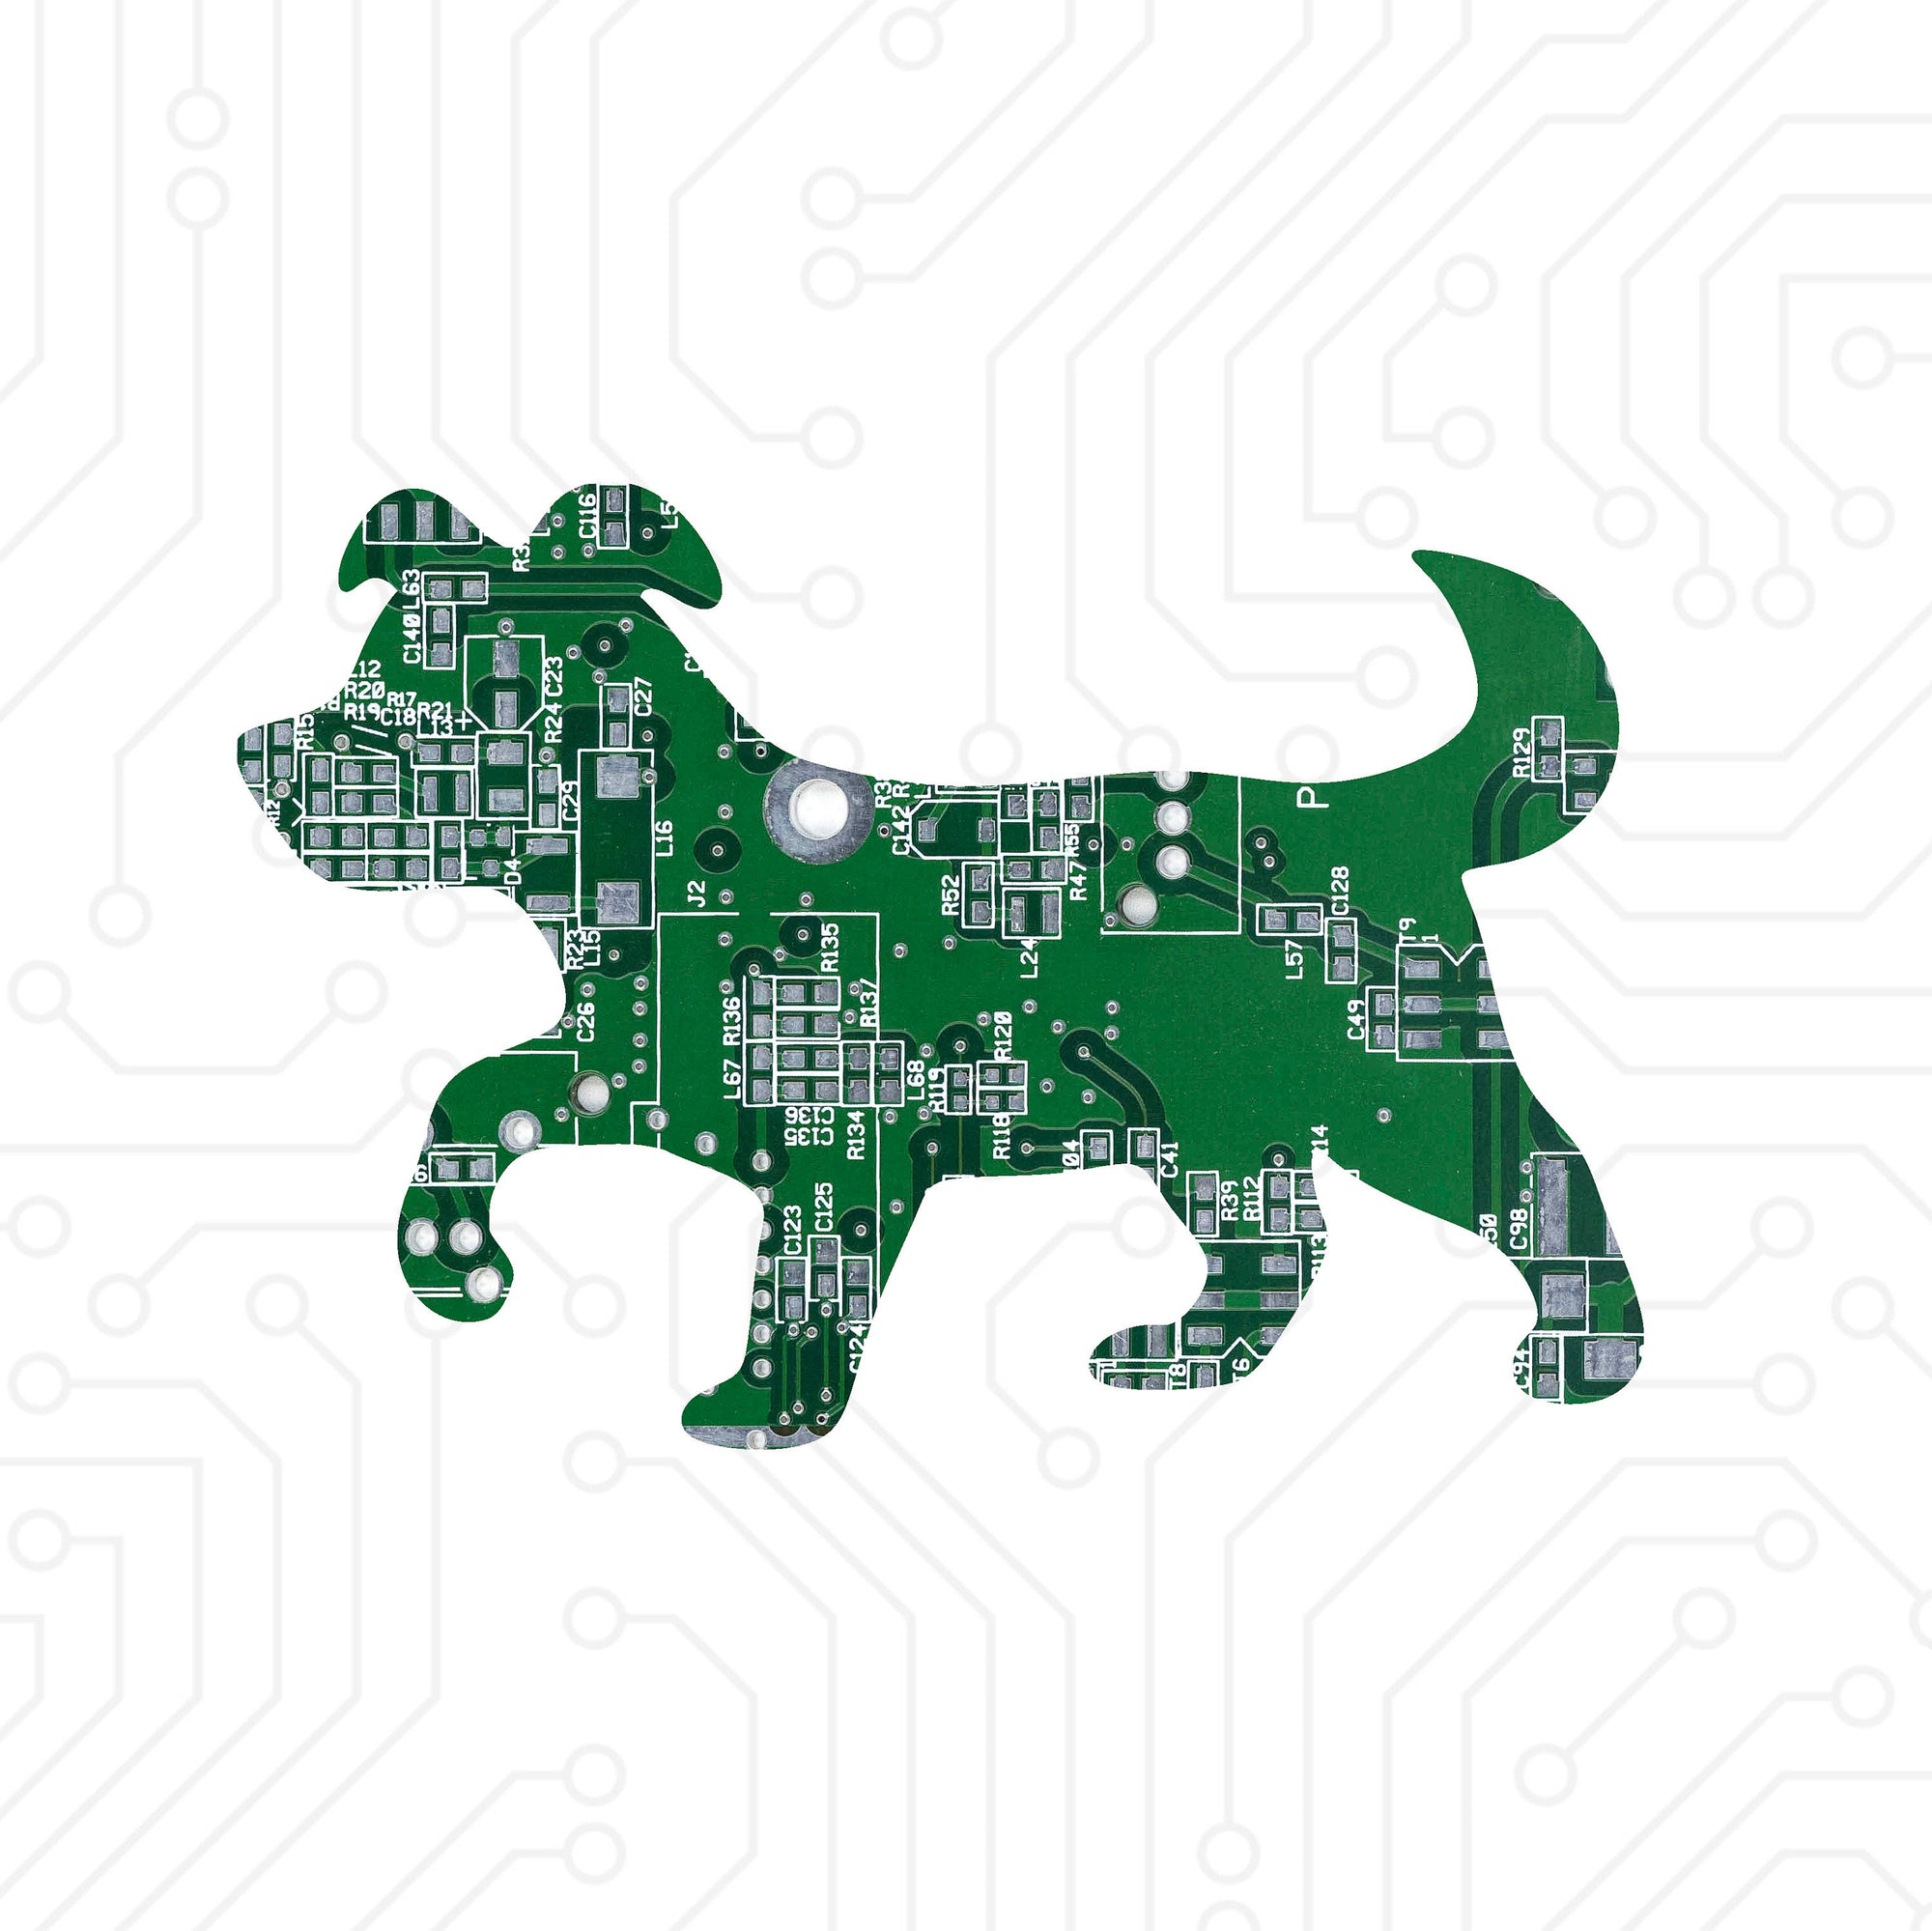 Puppy - TechWears Ltd